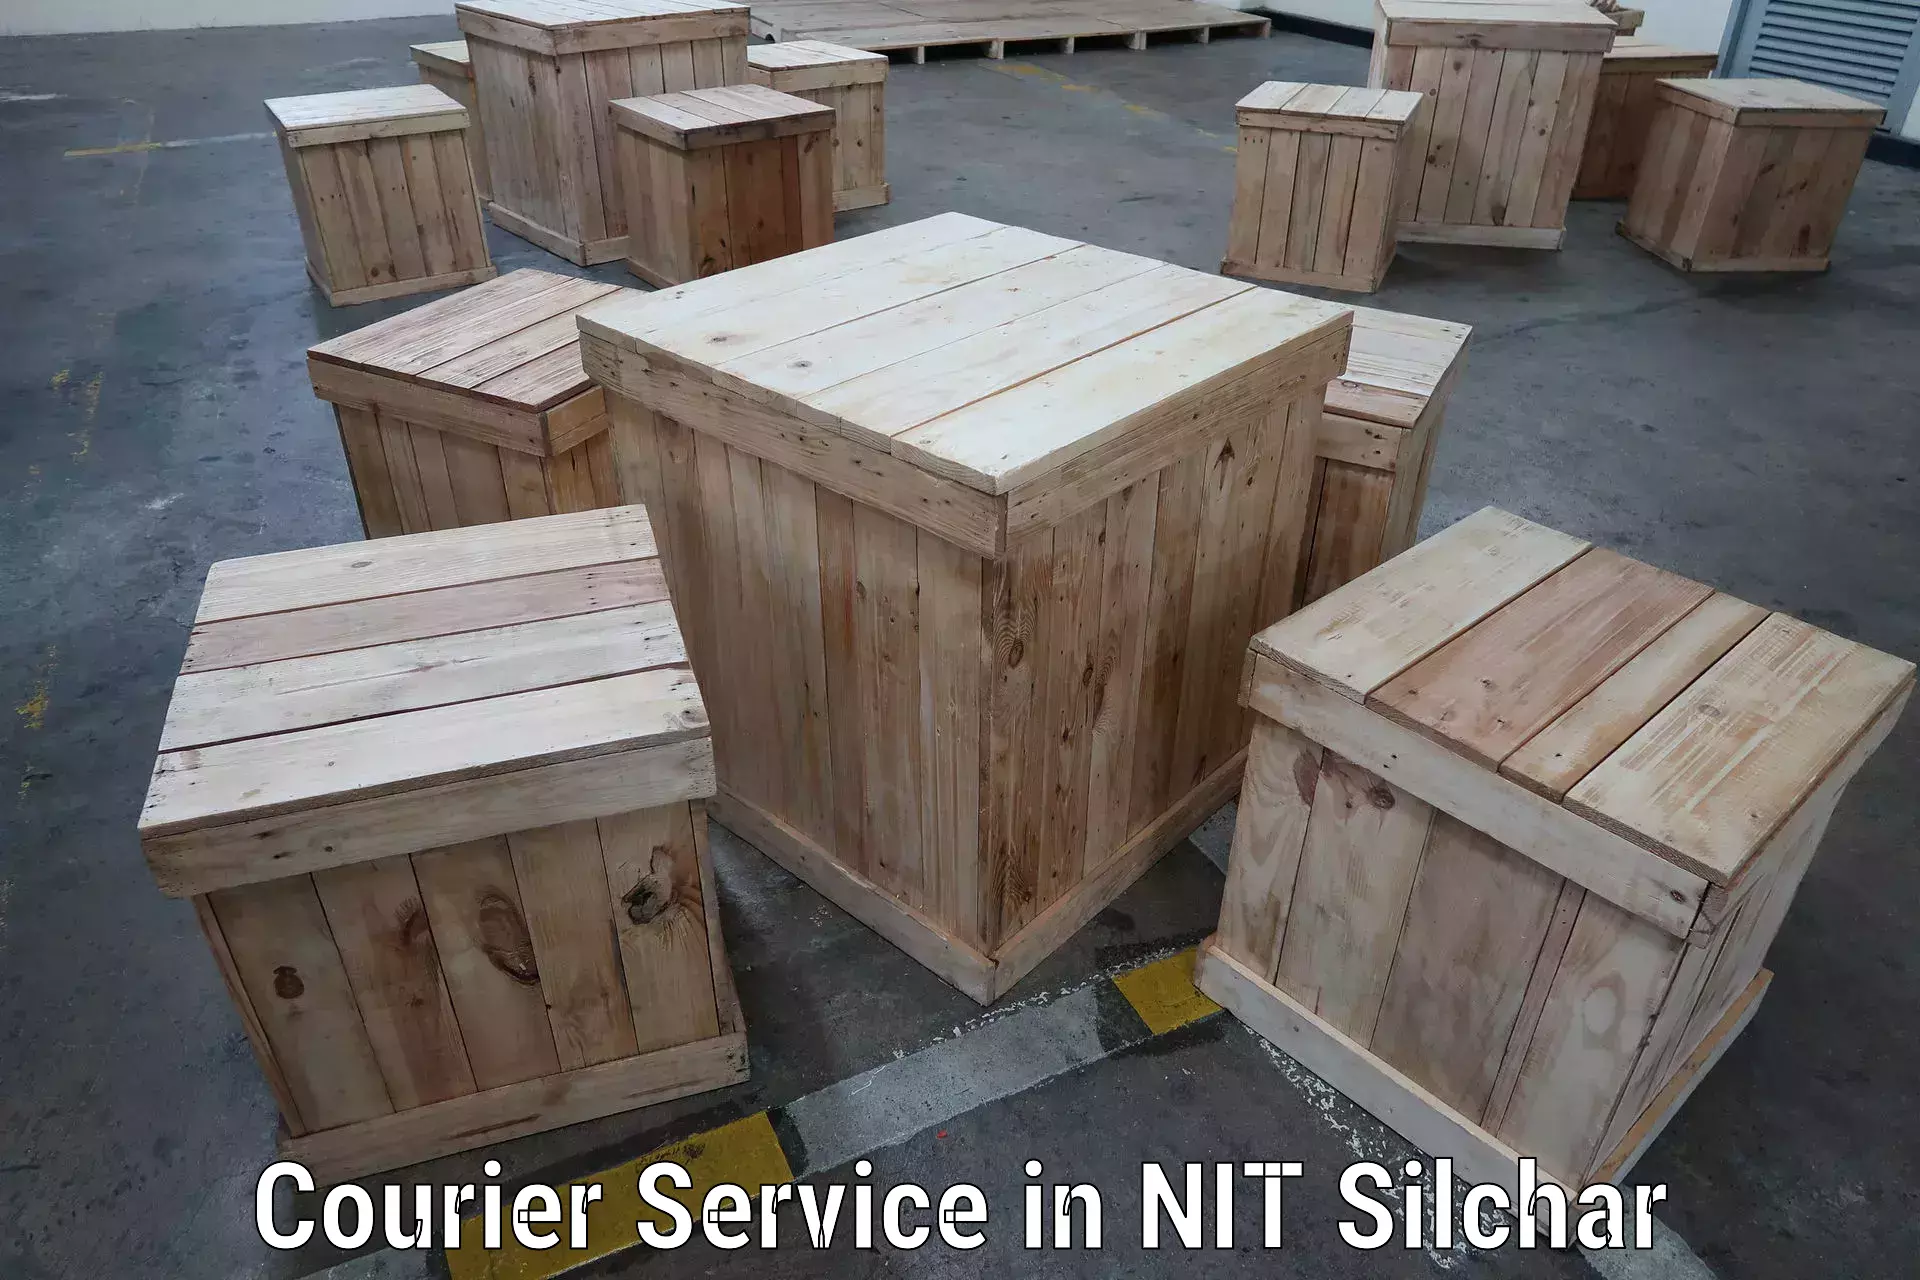 Smart logistics strategies in NIT Silchar